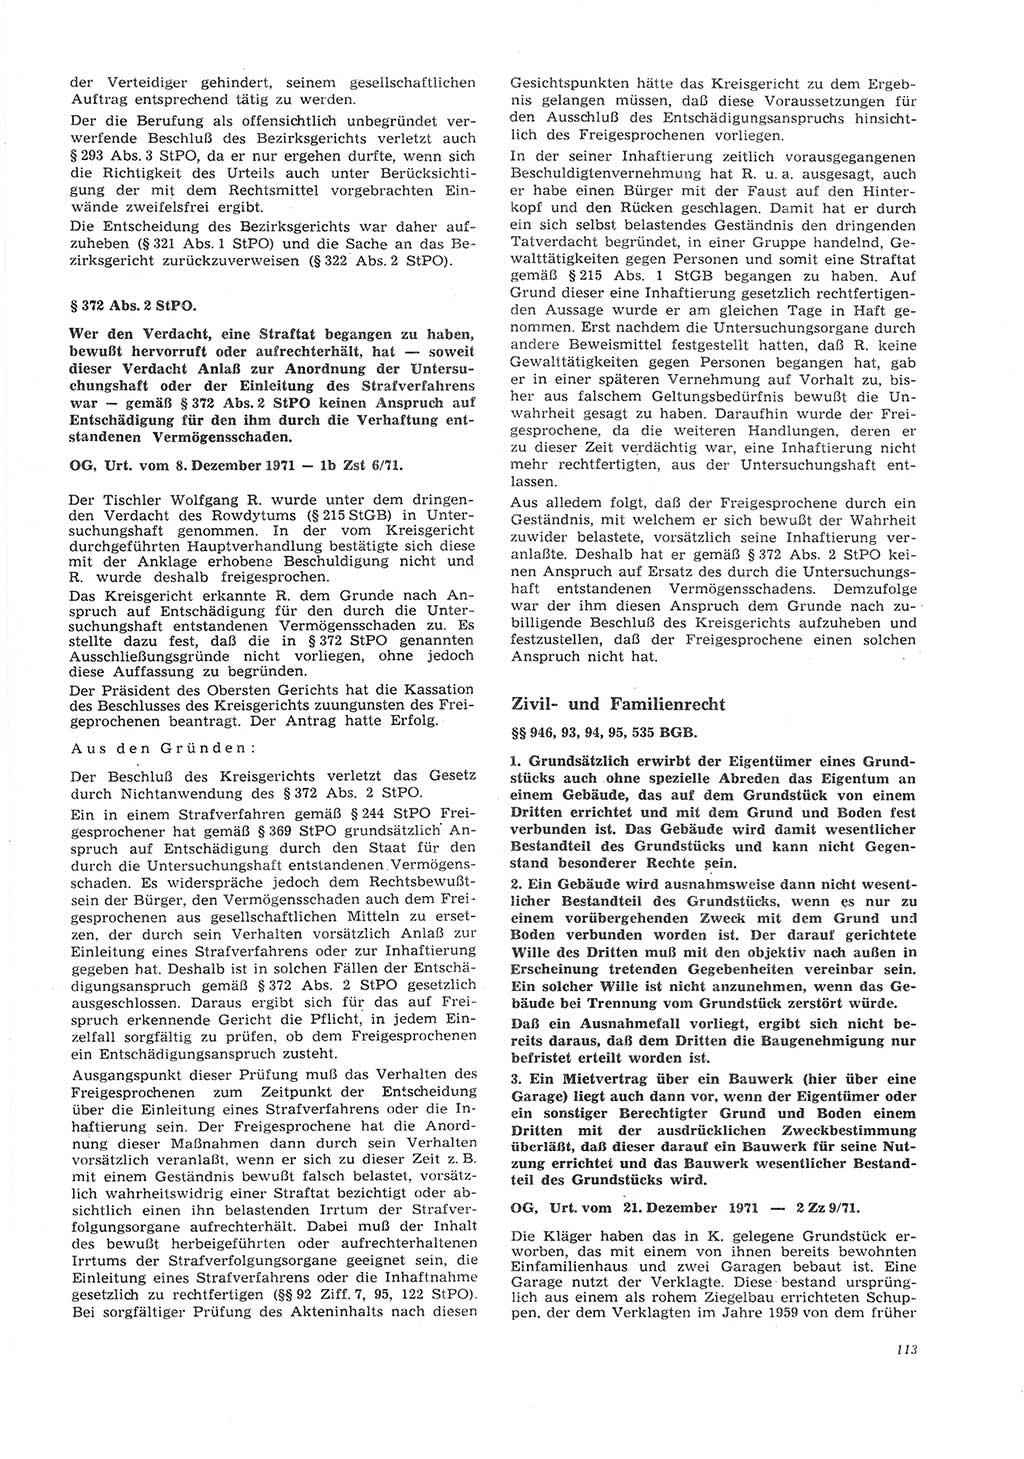 Neue Justiz (NJ), Zeitschrift für Recht und Rechtswissenschaft [Deutsche Demokratische Republik (DDR)], 26. Jahrgang 1972, Seite 113 (NJ DDR 1972, S. 113)